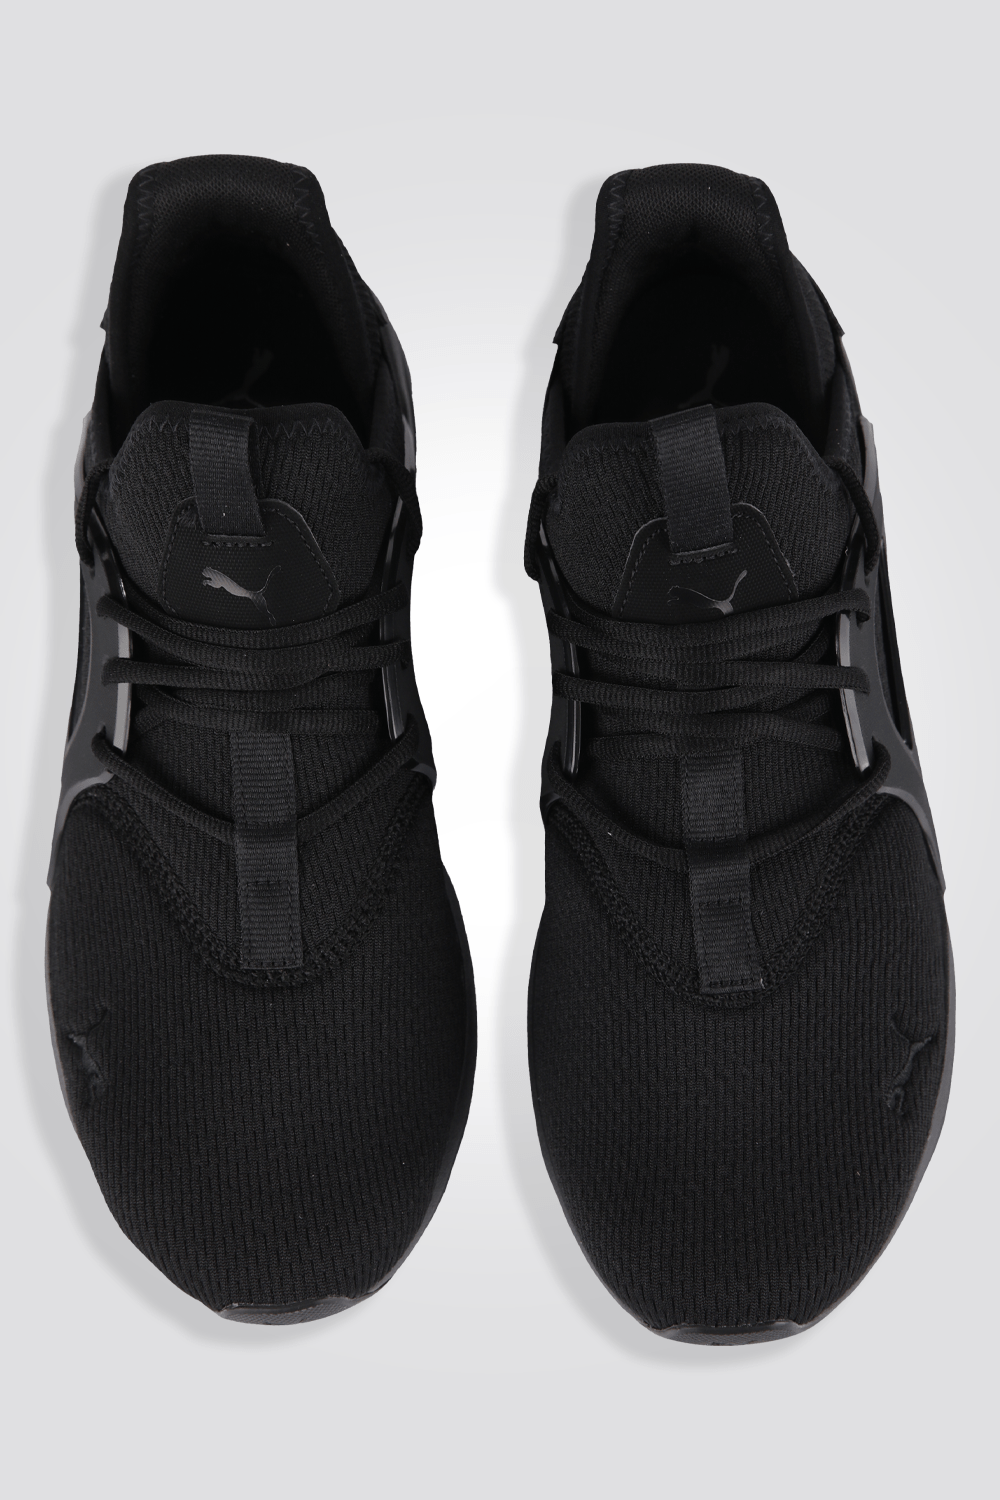 PUMA - נעלי ספורט לגברים Softride Enzo Evo בצבע שחור - MASHBIR//365